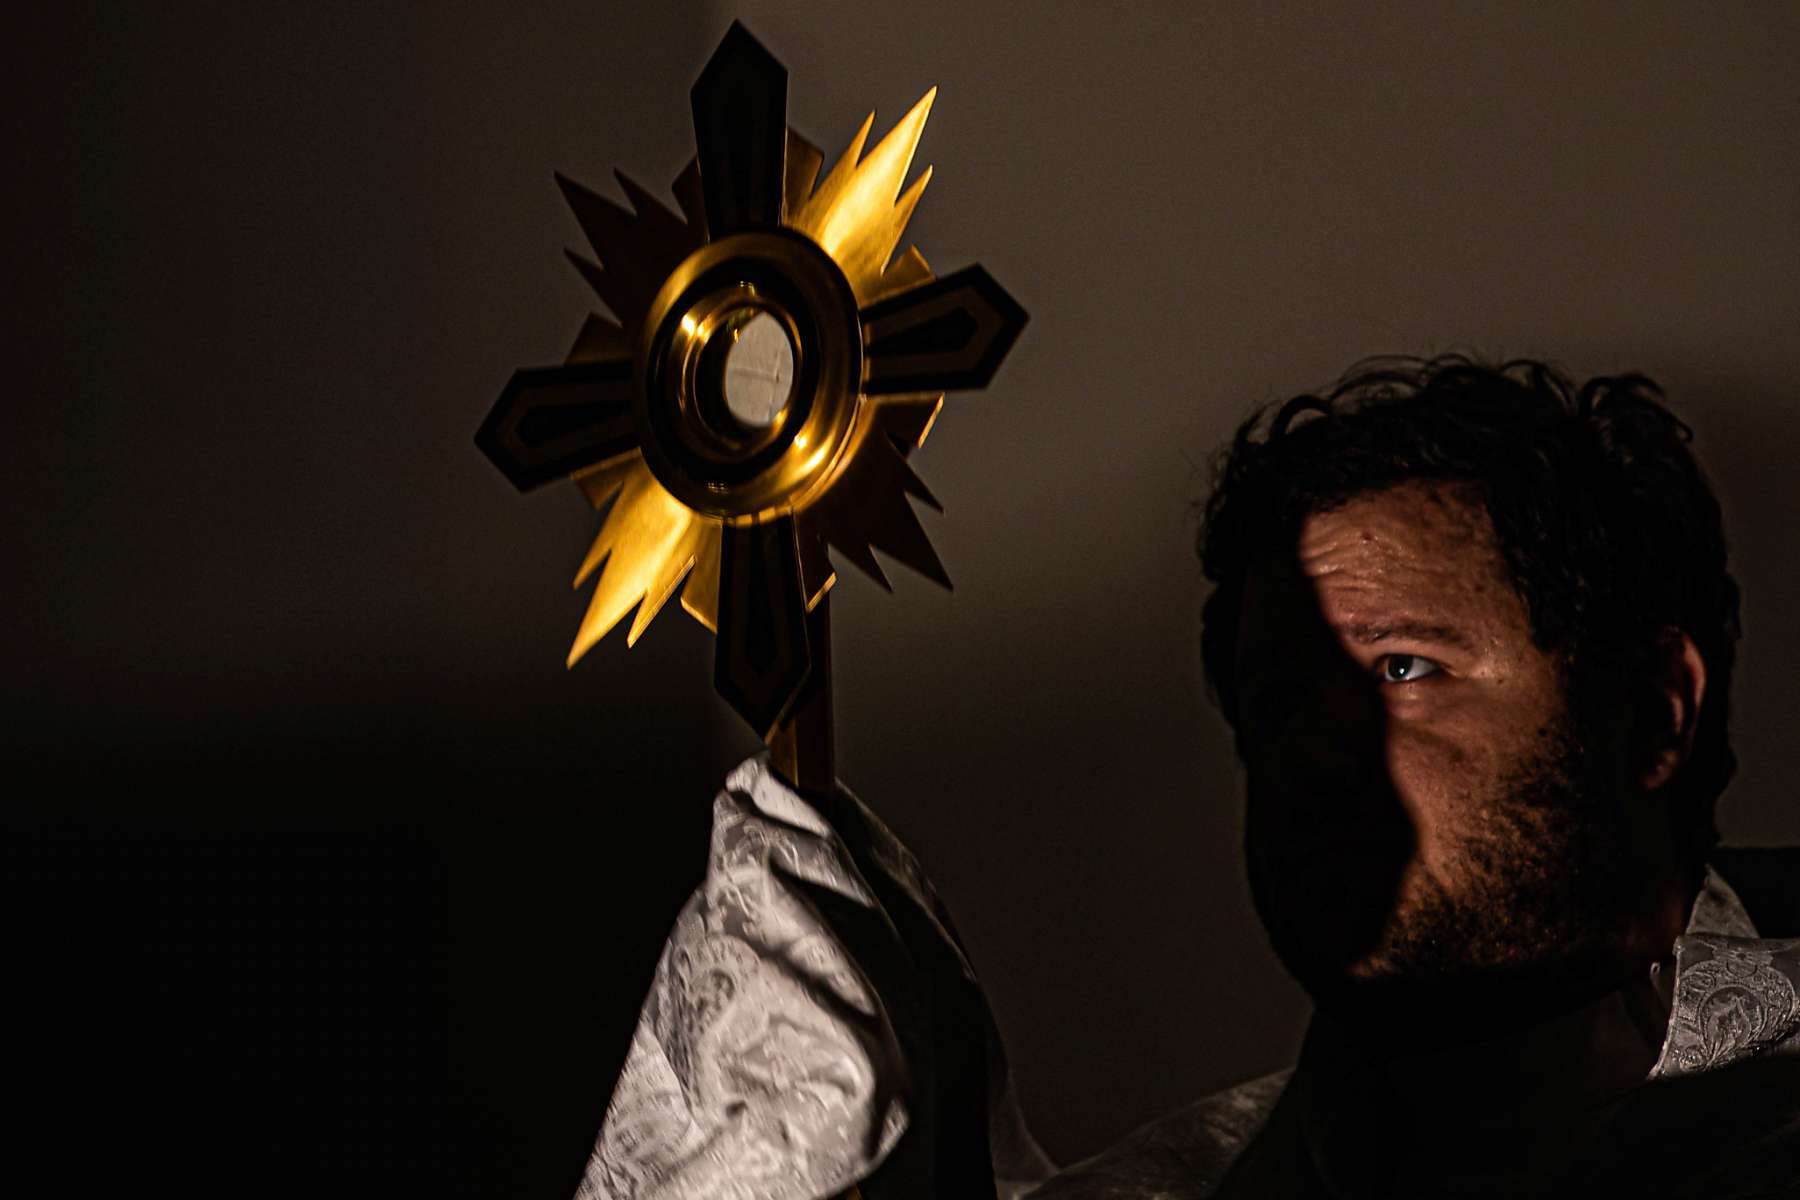 A golden crucifix blocks the light from a man's face